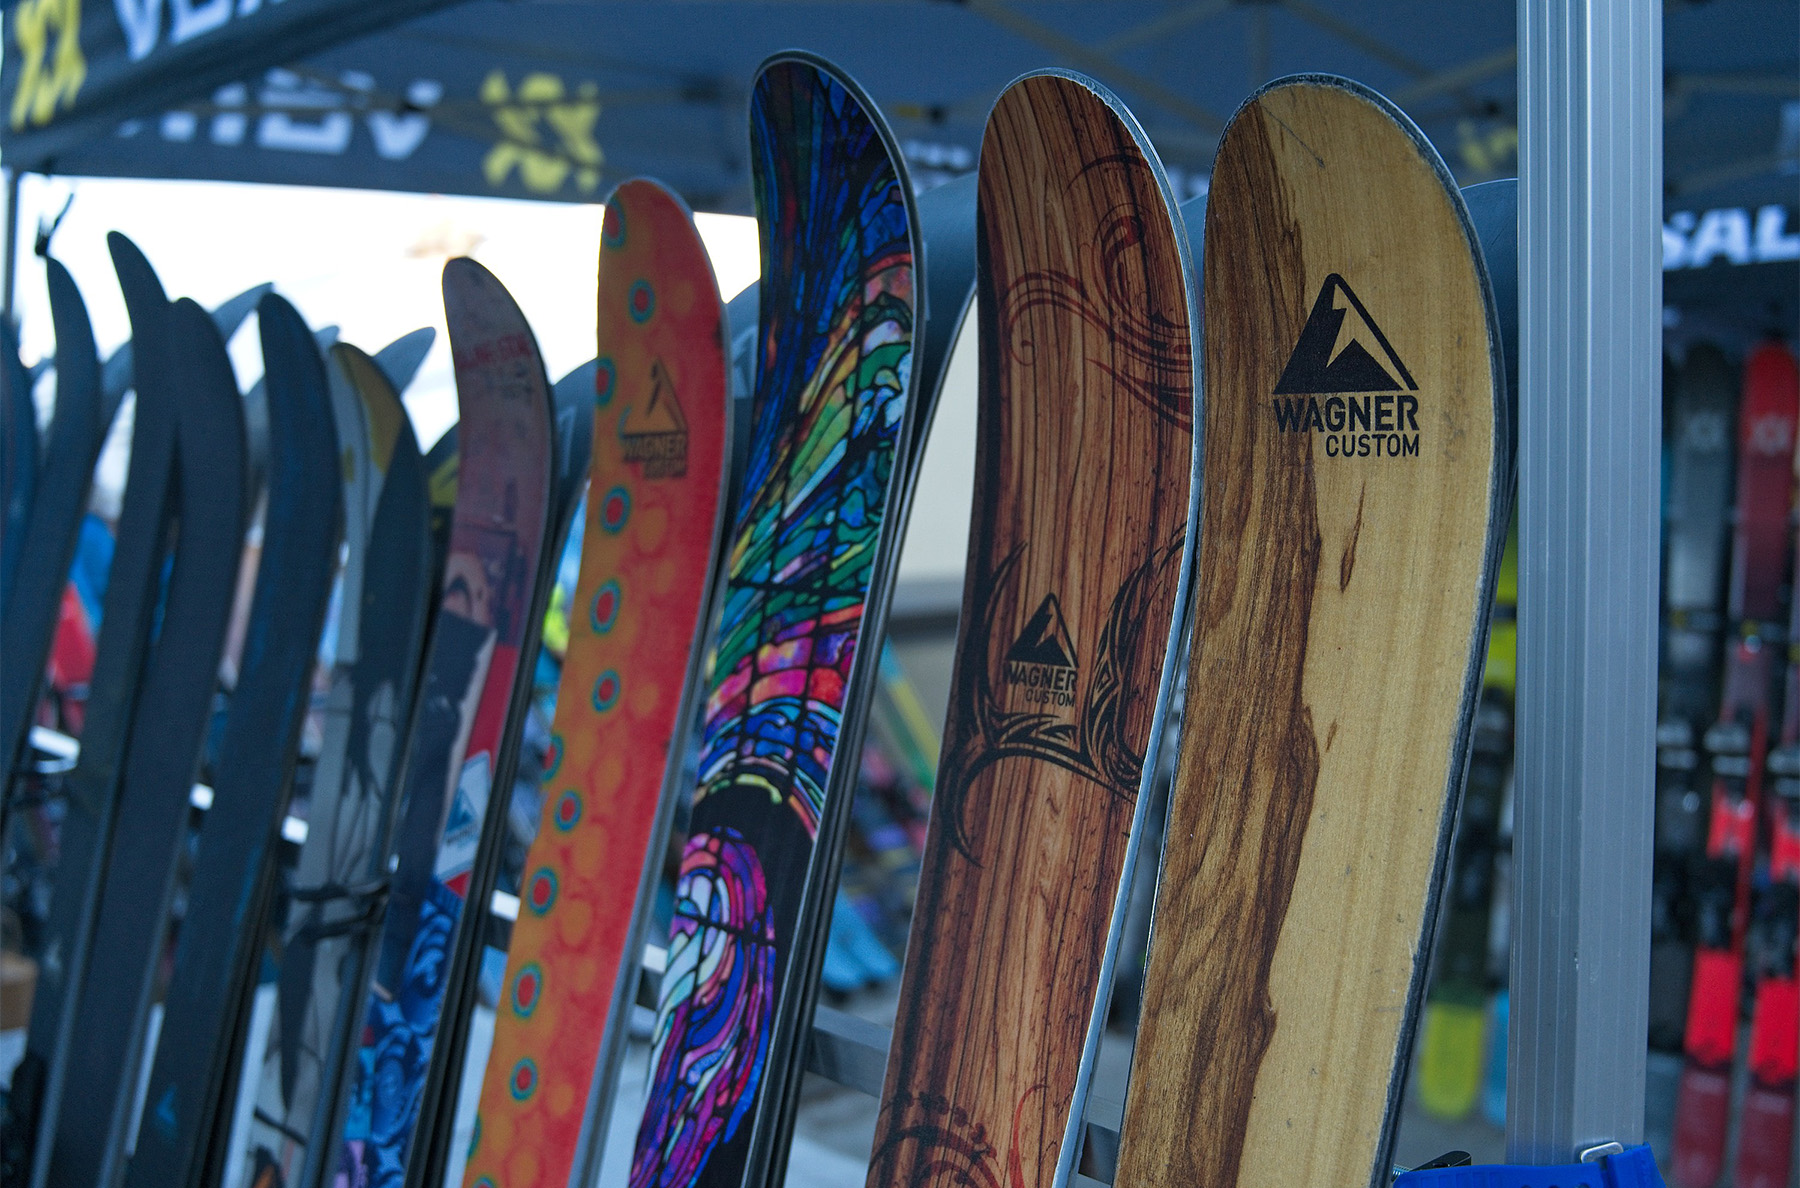 Wagner custom skis